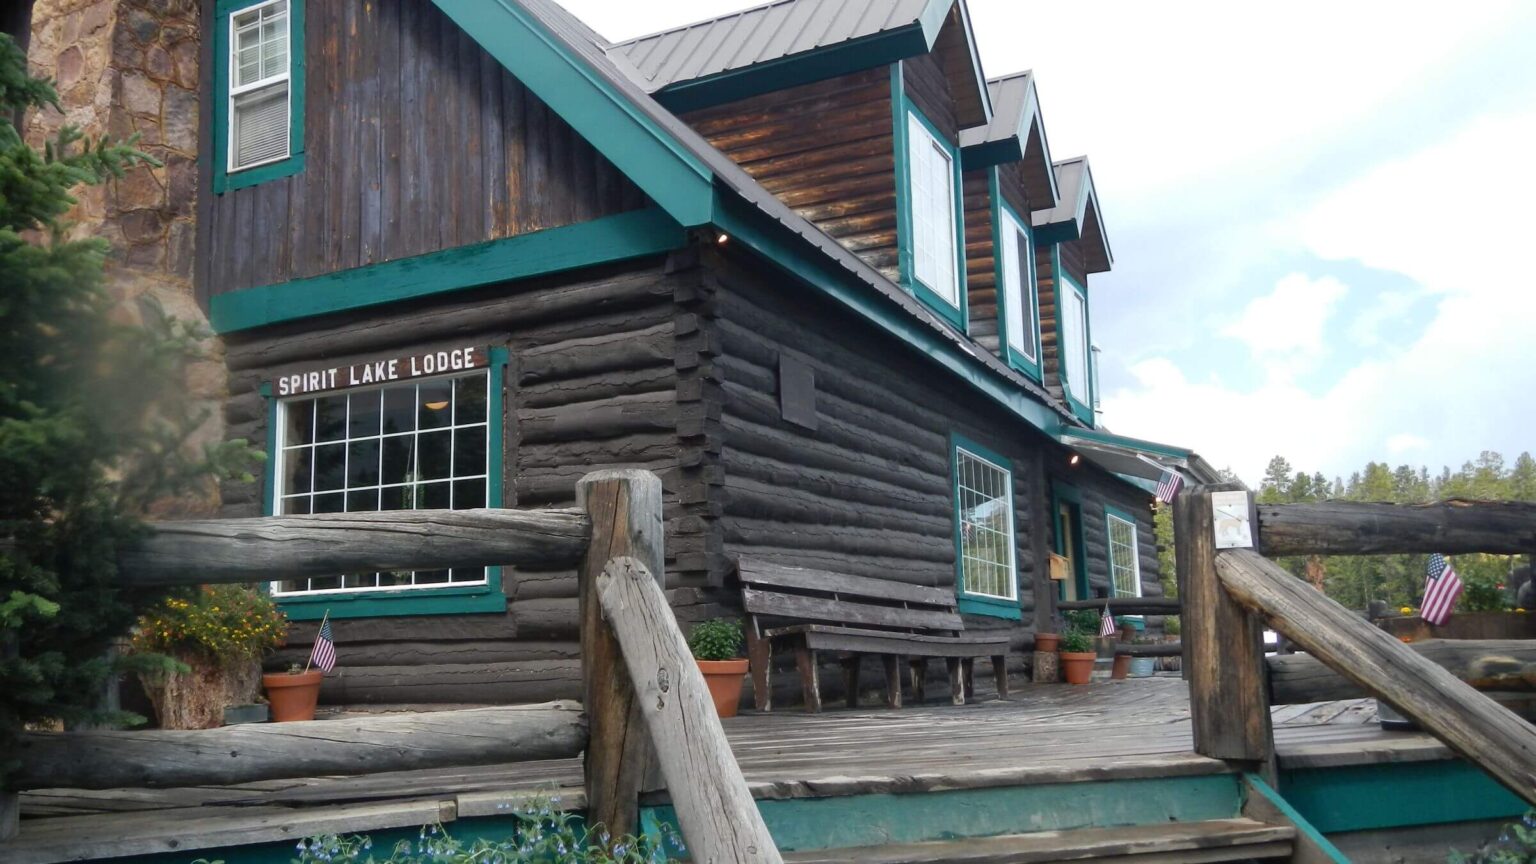 High Uintas Wilderness, Spirit Lake Lodge historic lodge, July2021